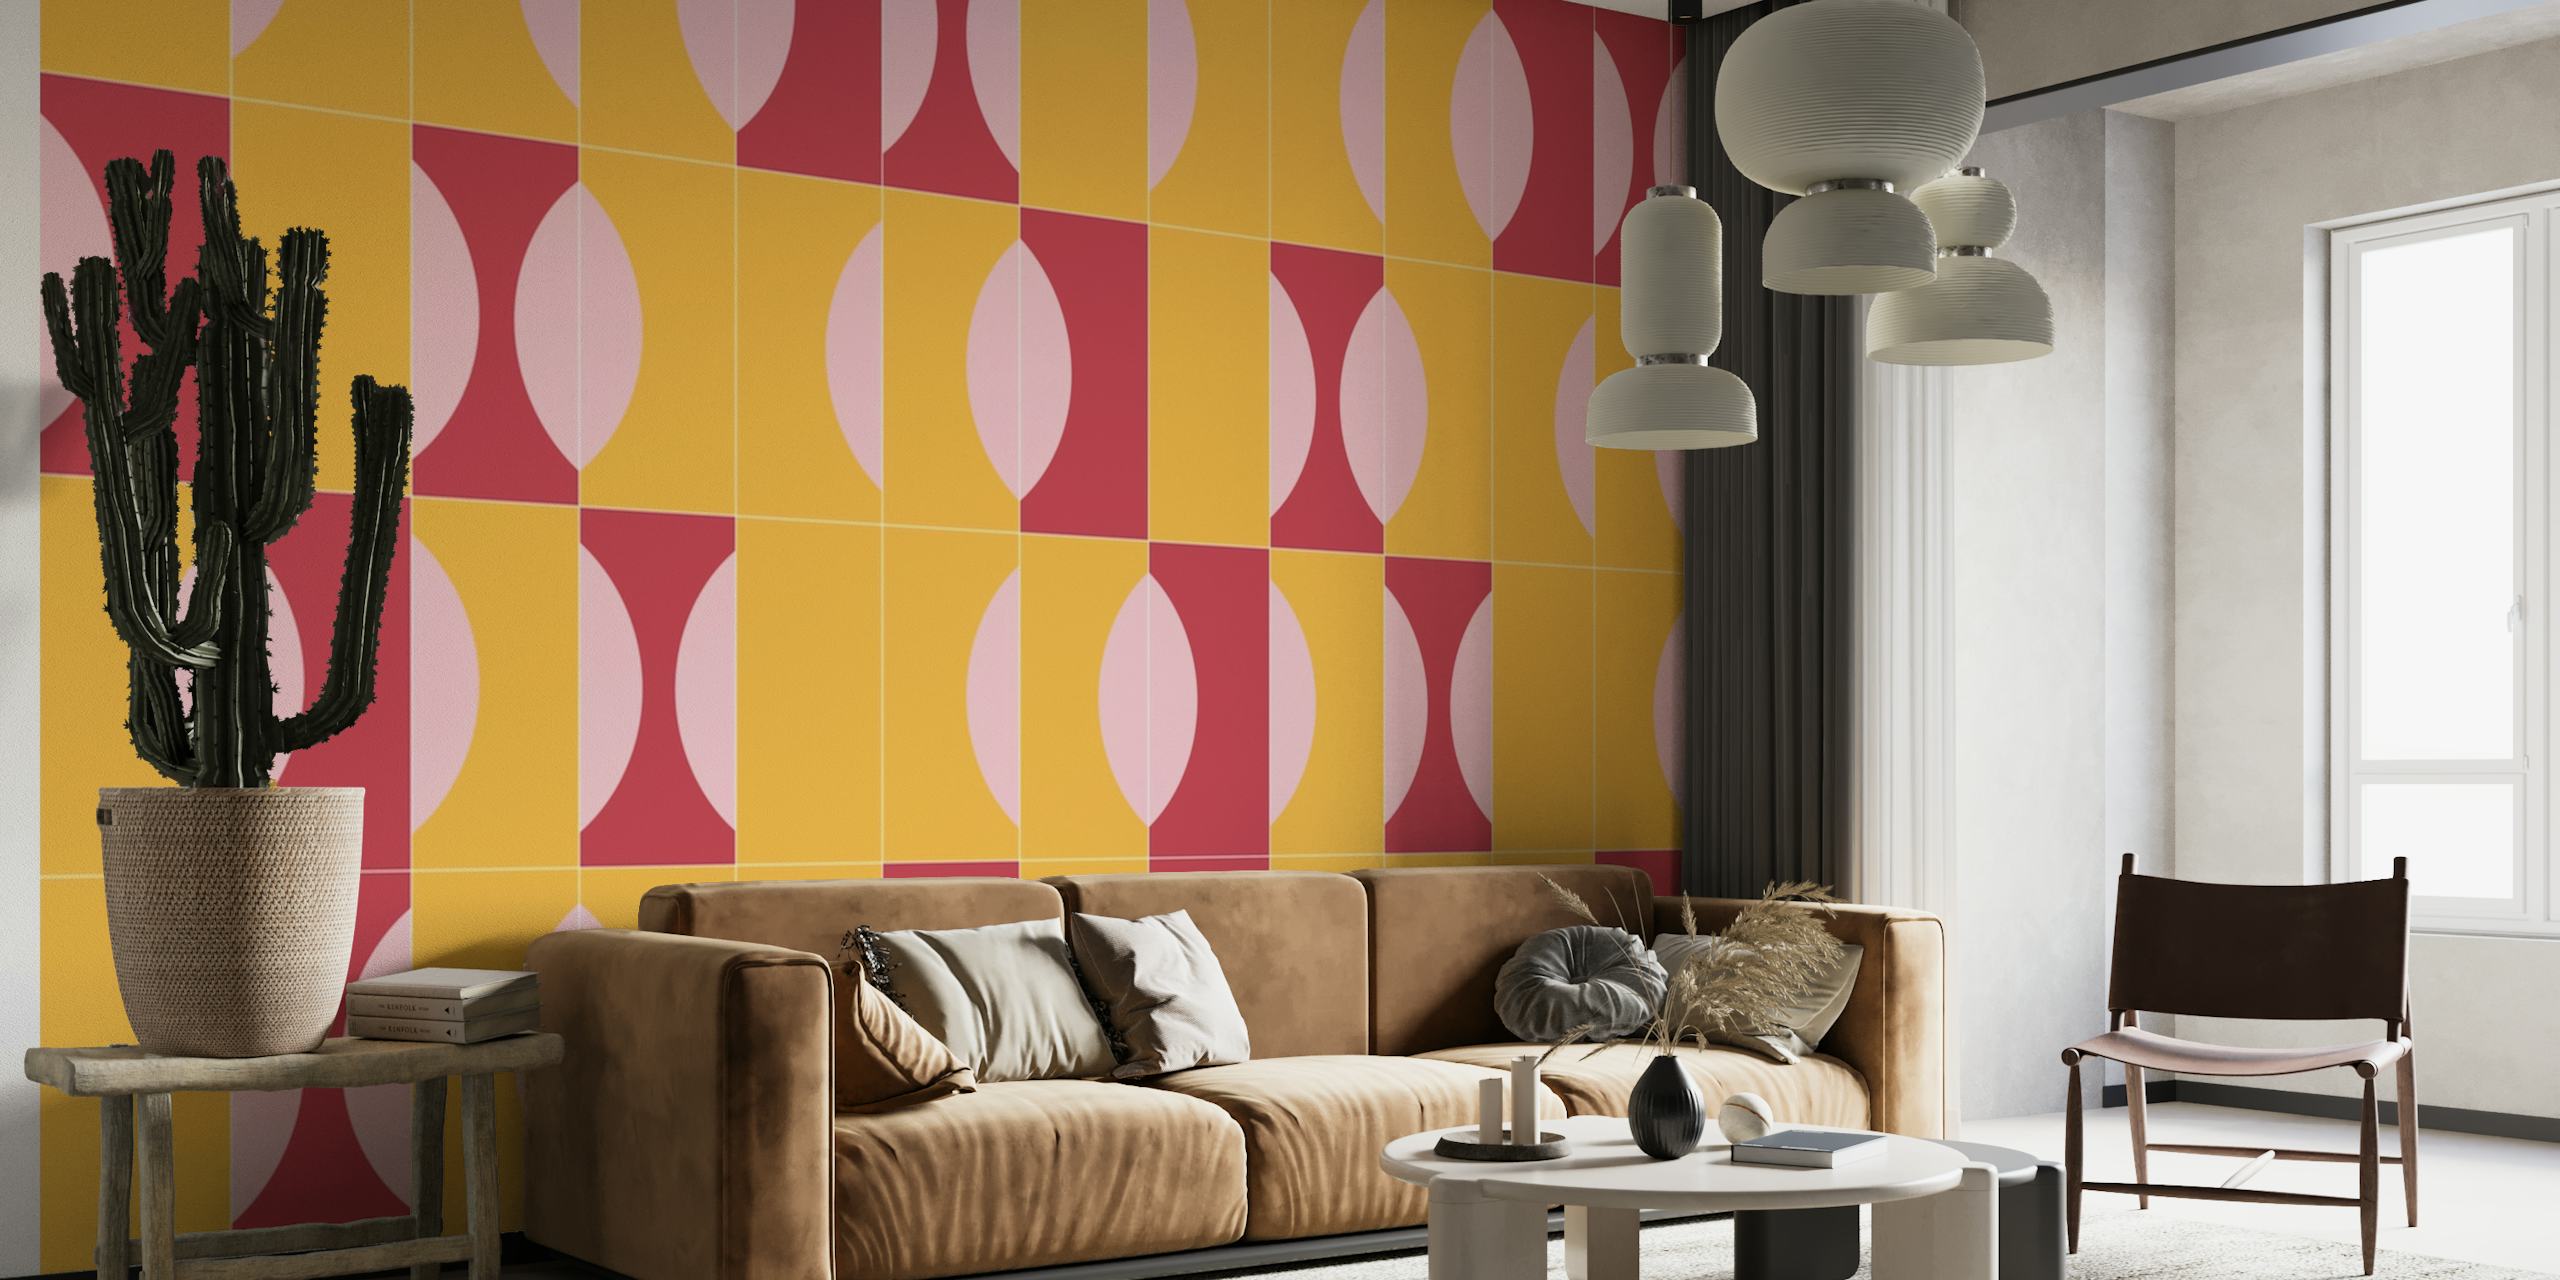 Abstrakt Sunny Tiles 03 tapet med geometriska former i orange, rosa och lavendeltoner